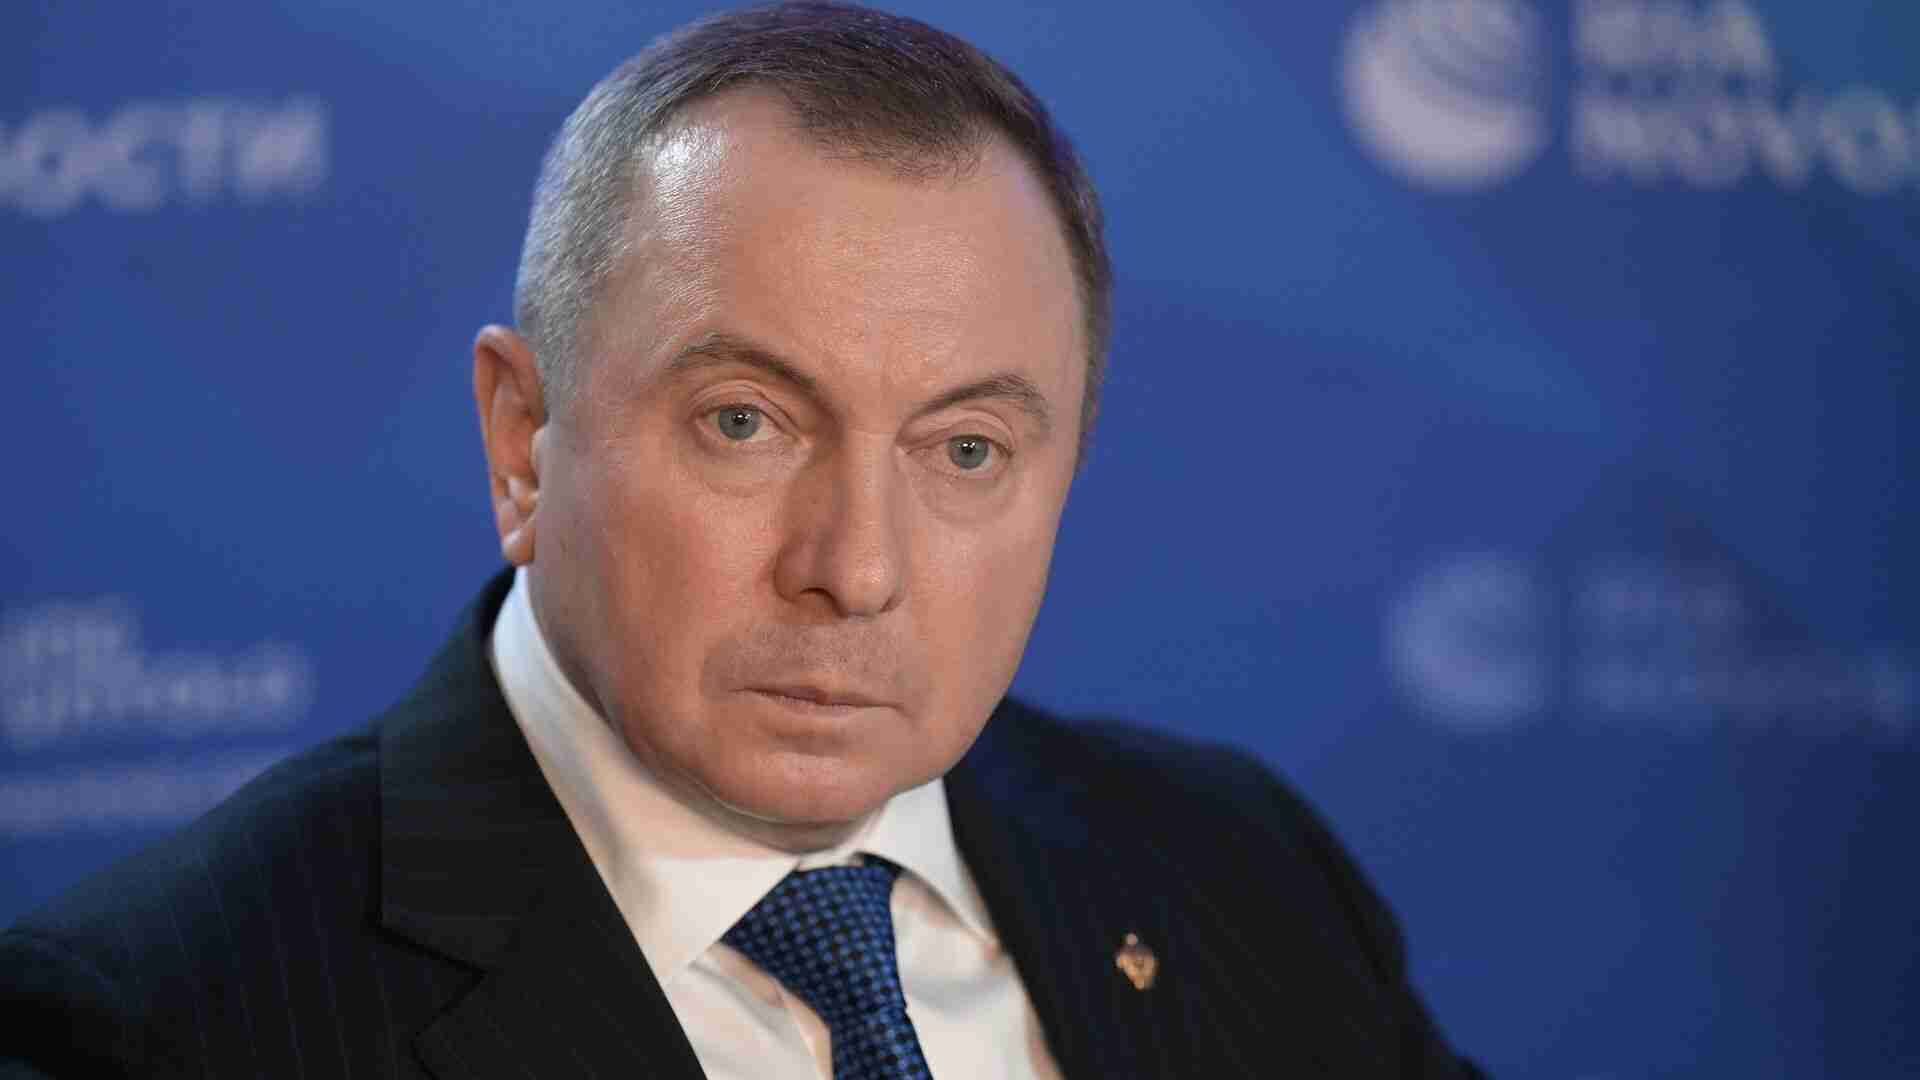 Раптово помер міністр закордонних справ білорусі